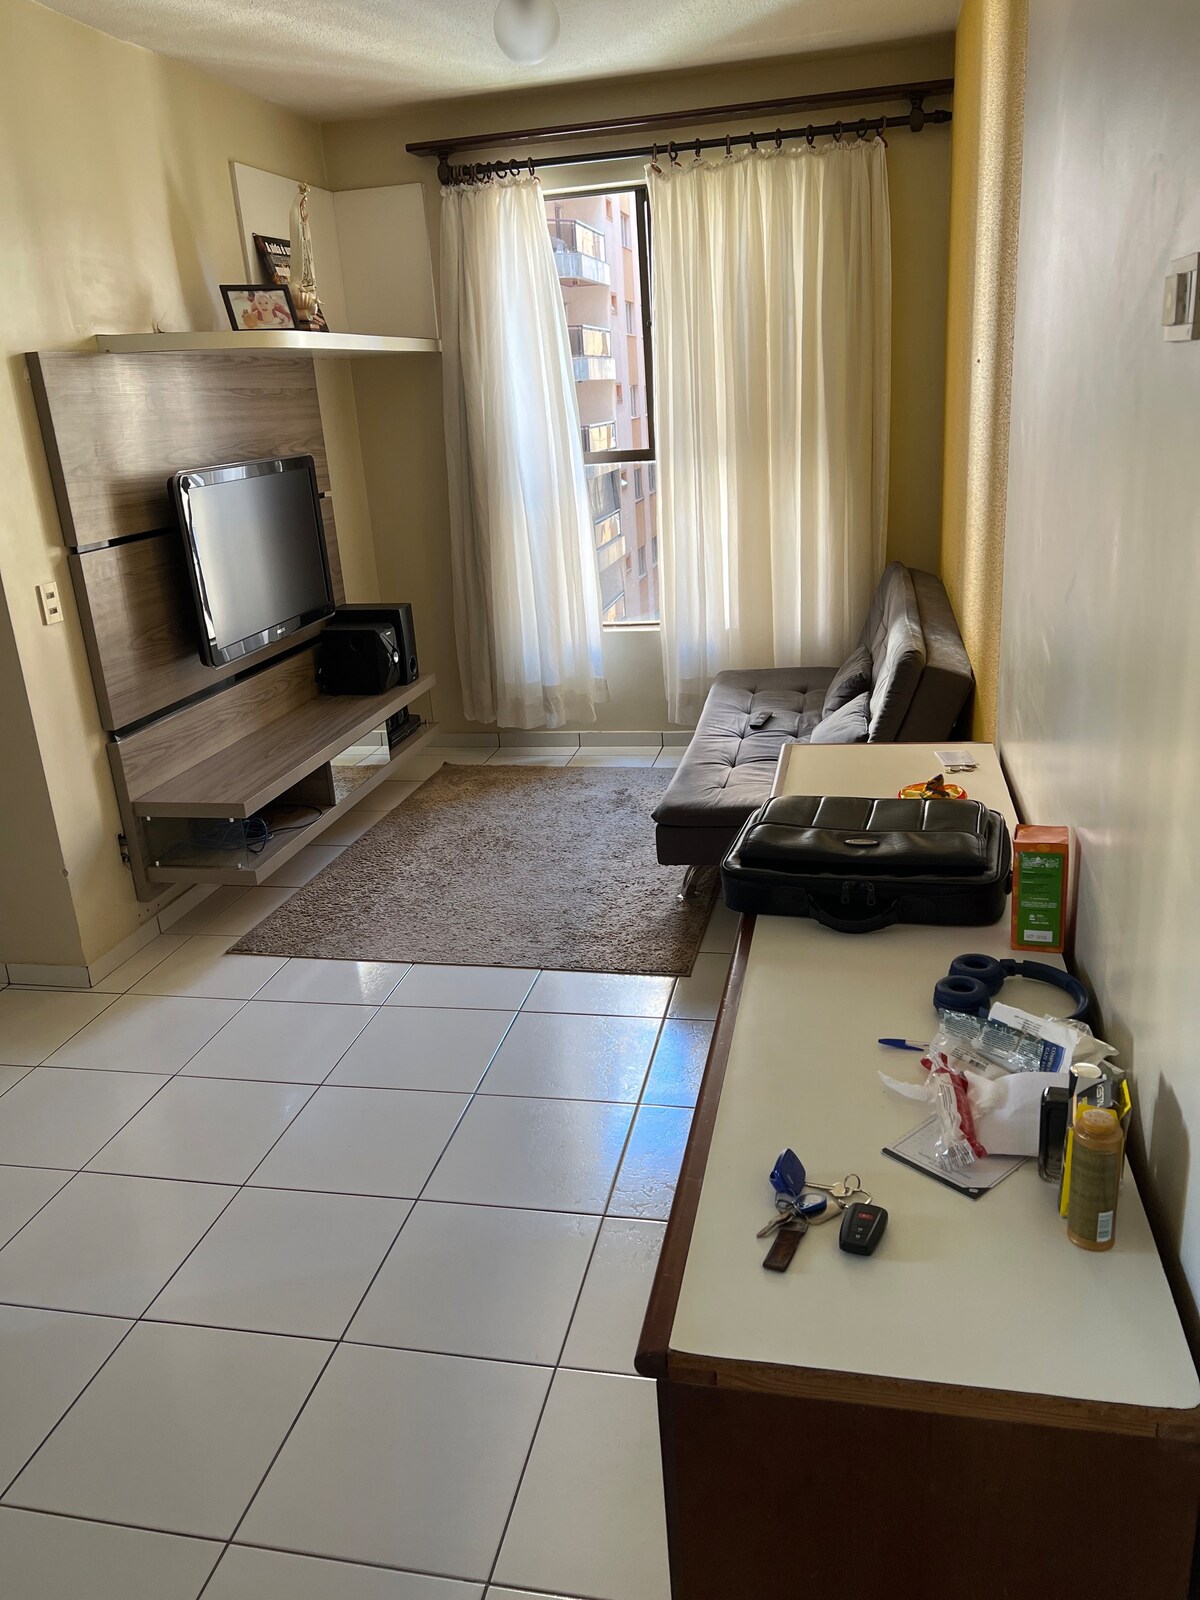 Flat com quarto, cozinha e sala